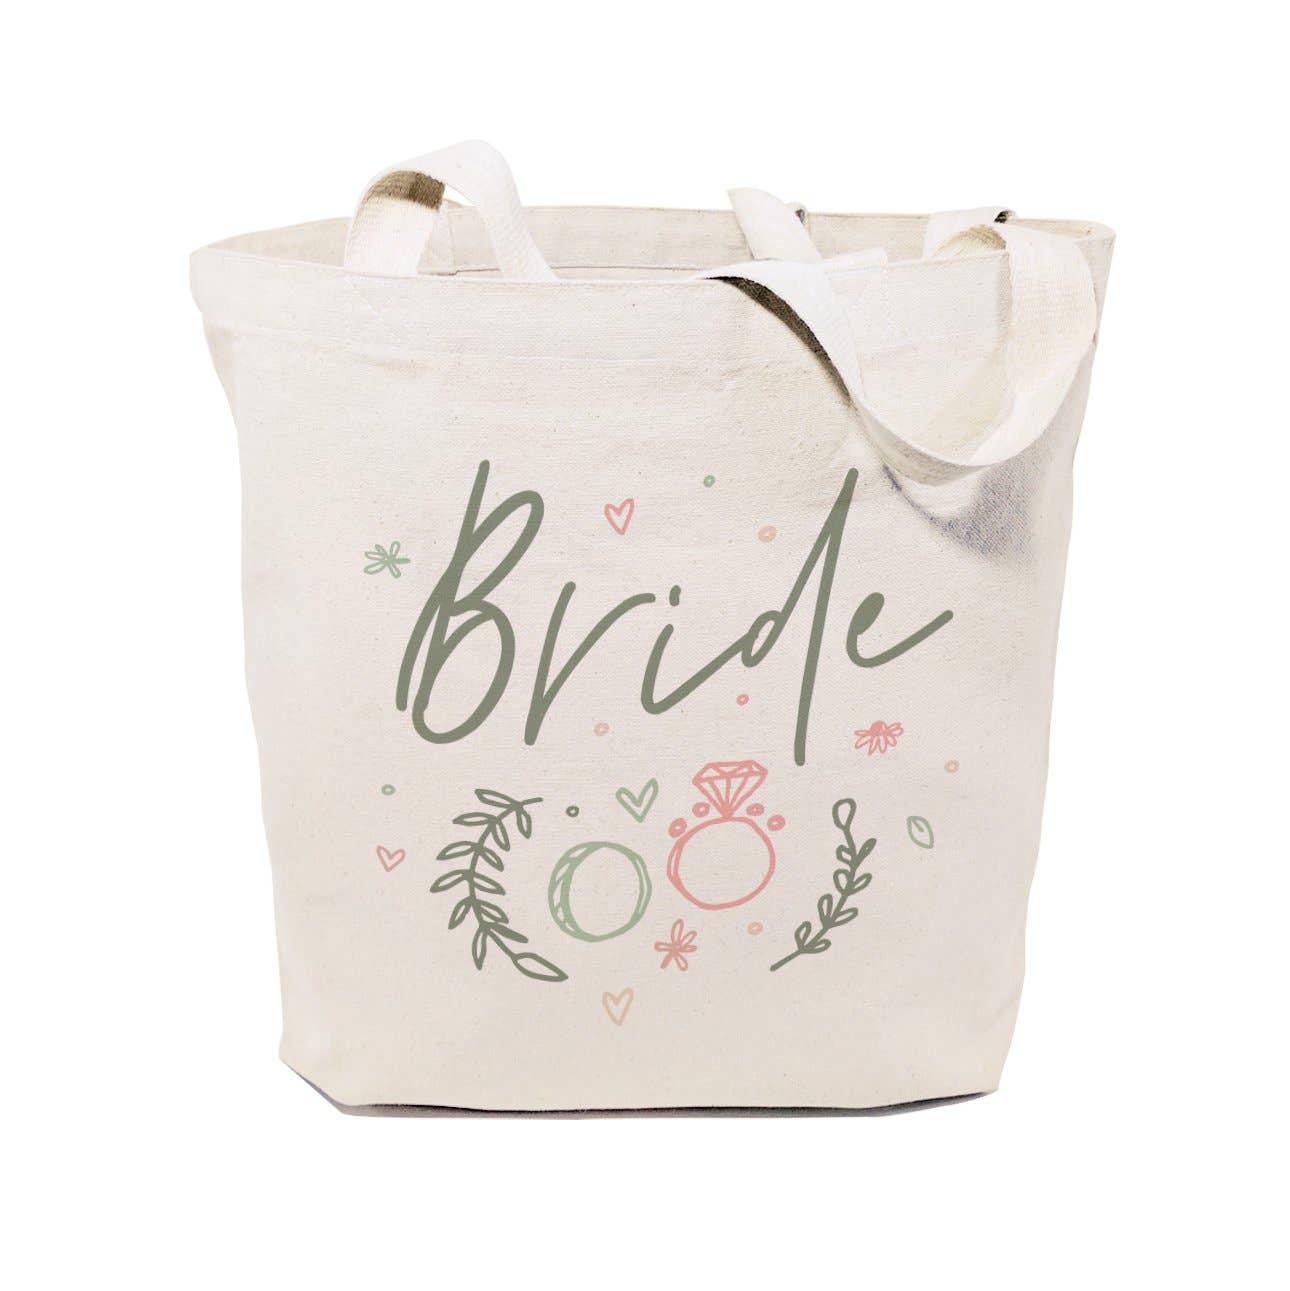 Floral Bride Tote and Handbag